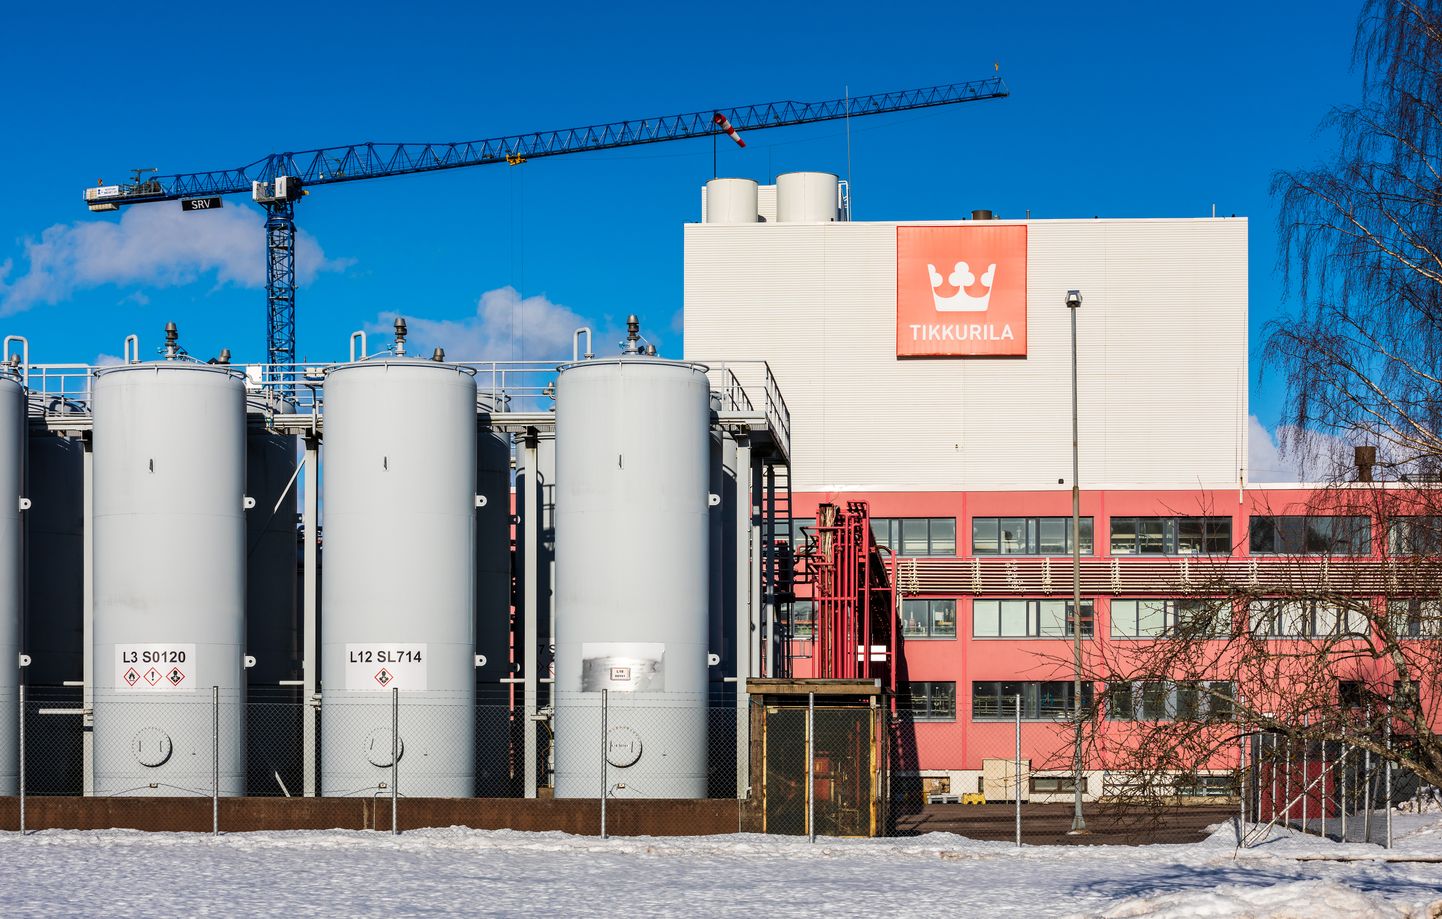 Tikkurila Vantaa tehas Soomes.